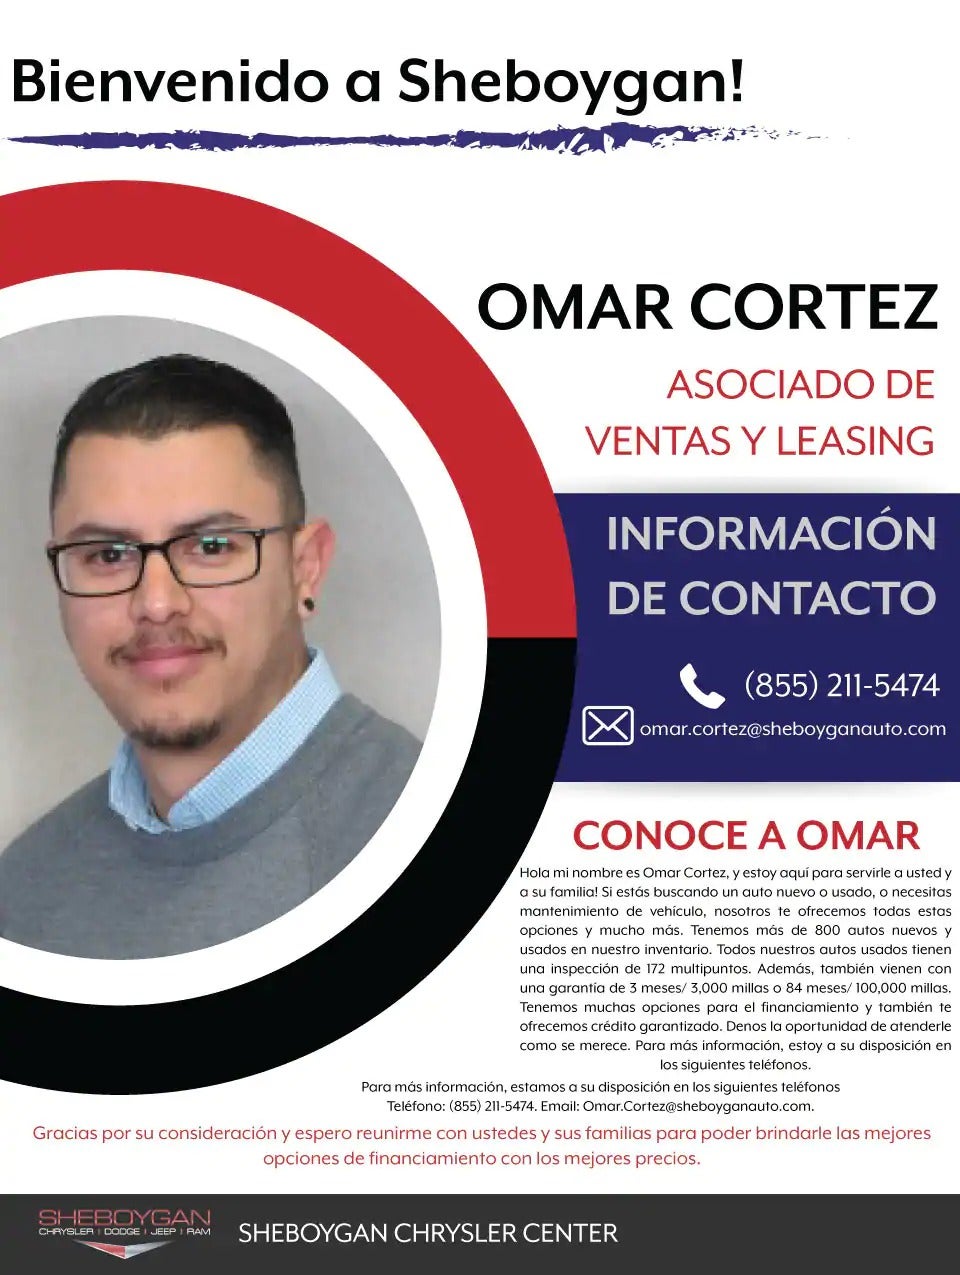 Omar Cortez Asociado de ventas y leasing at Sheboygan Chrysler Center in Sheboygan WI